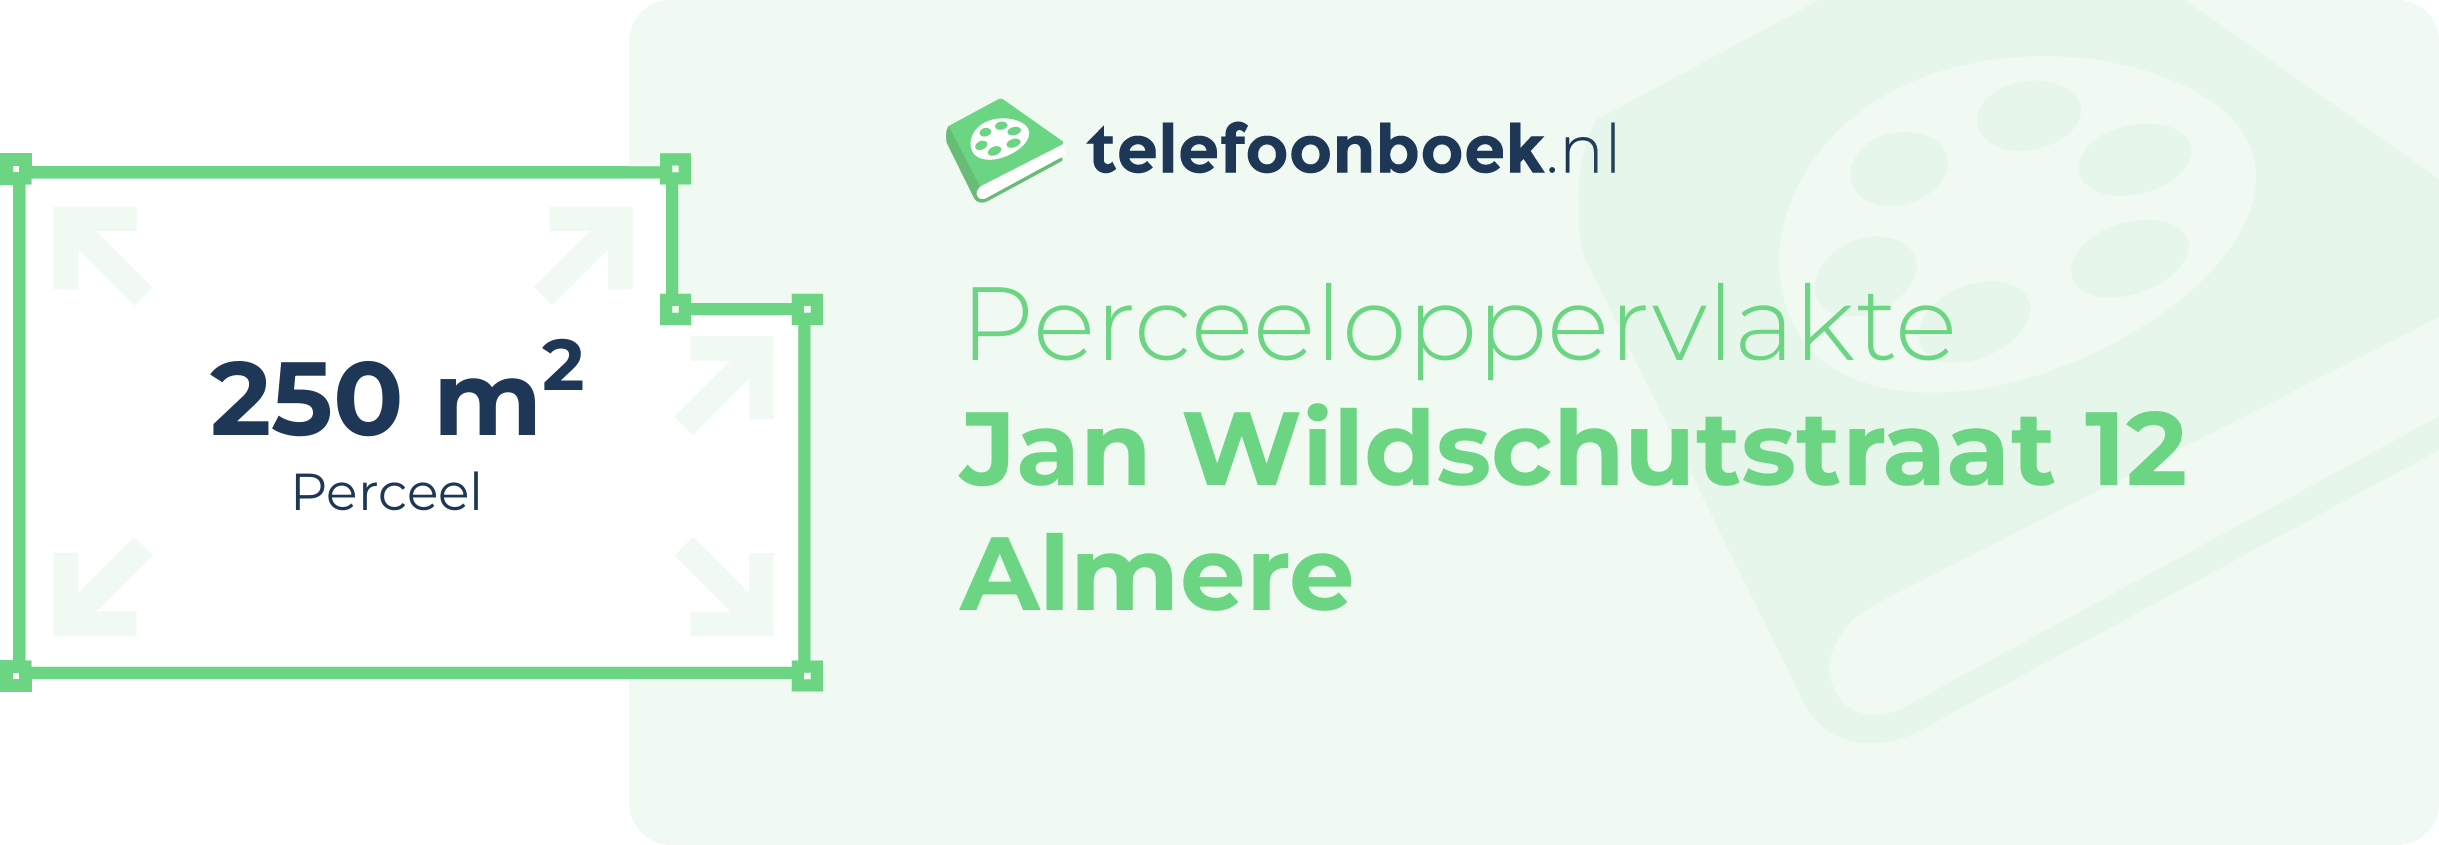 Perceeloppervlakte Jan Wildschutstraat 12 Almere